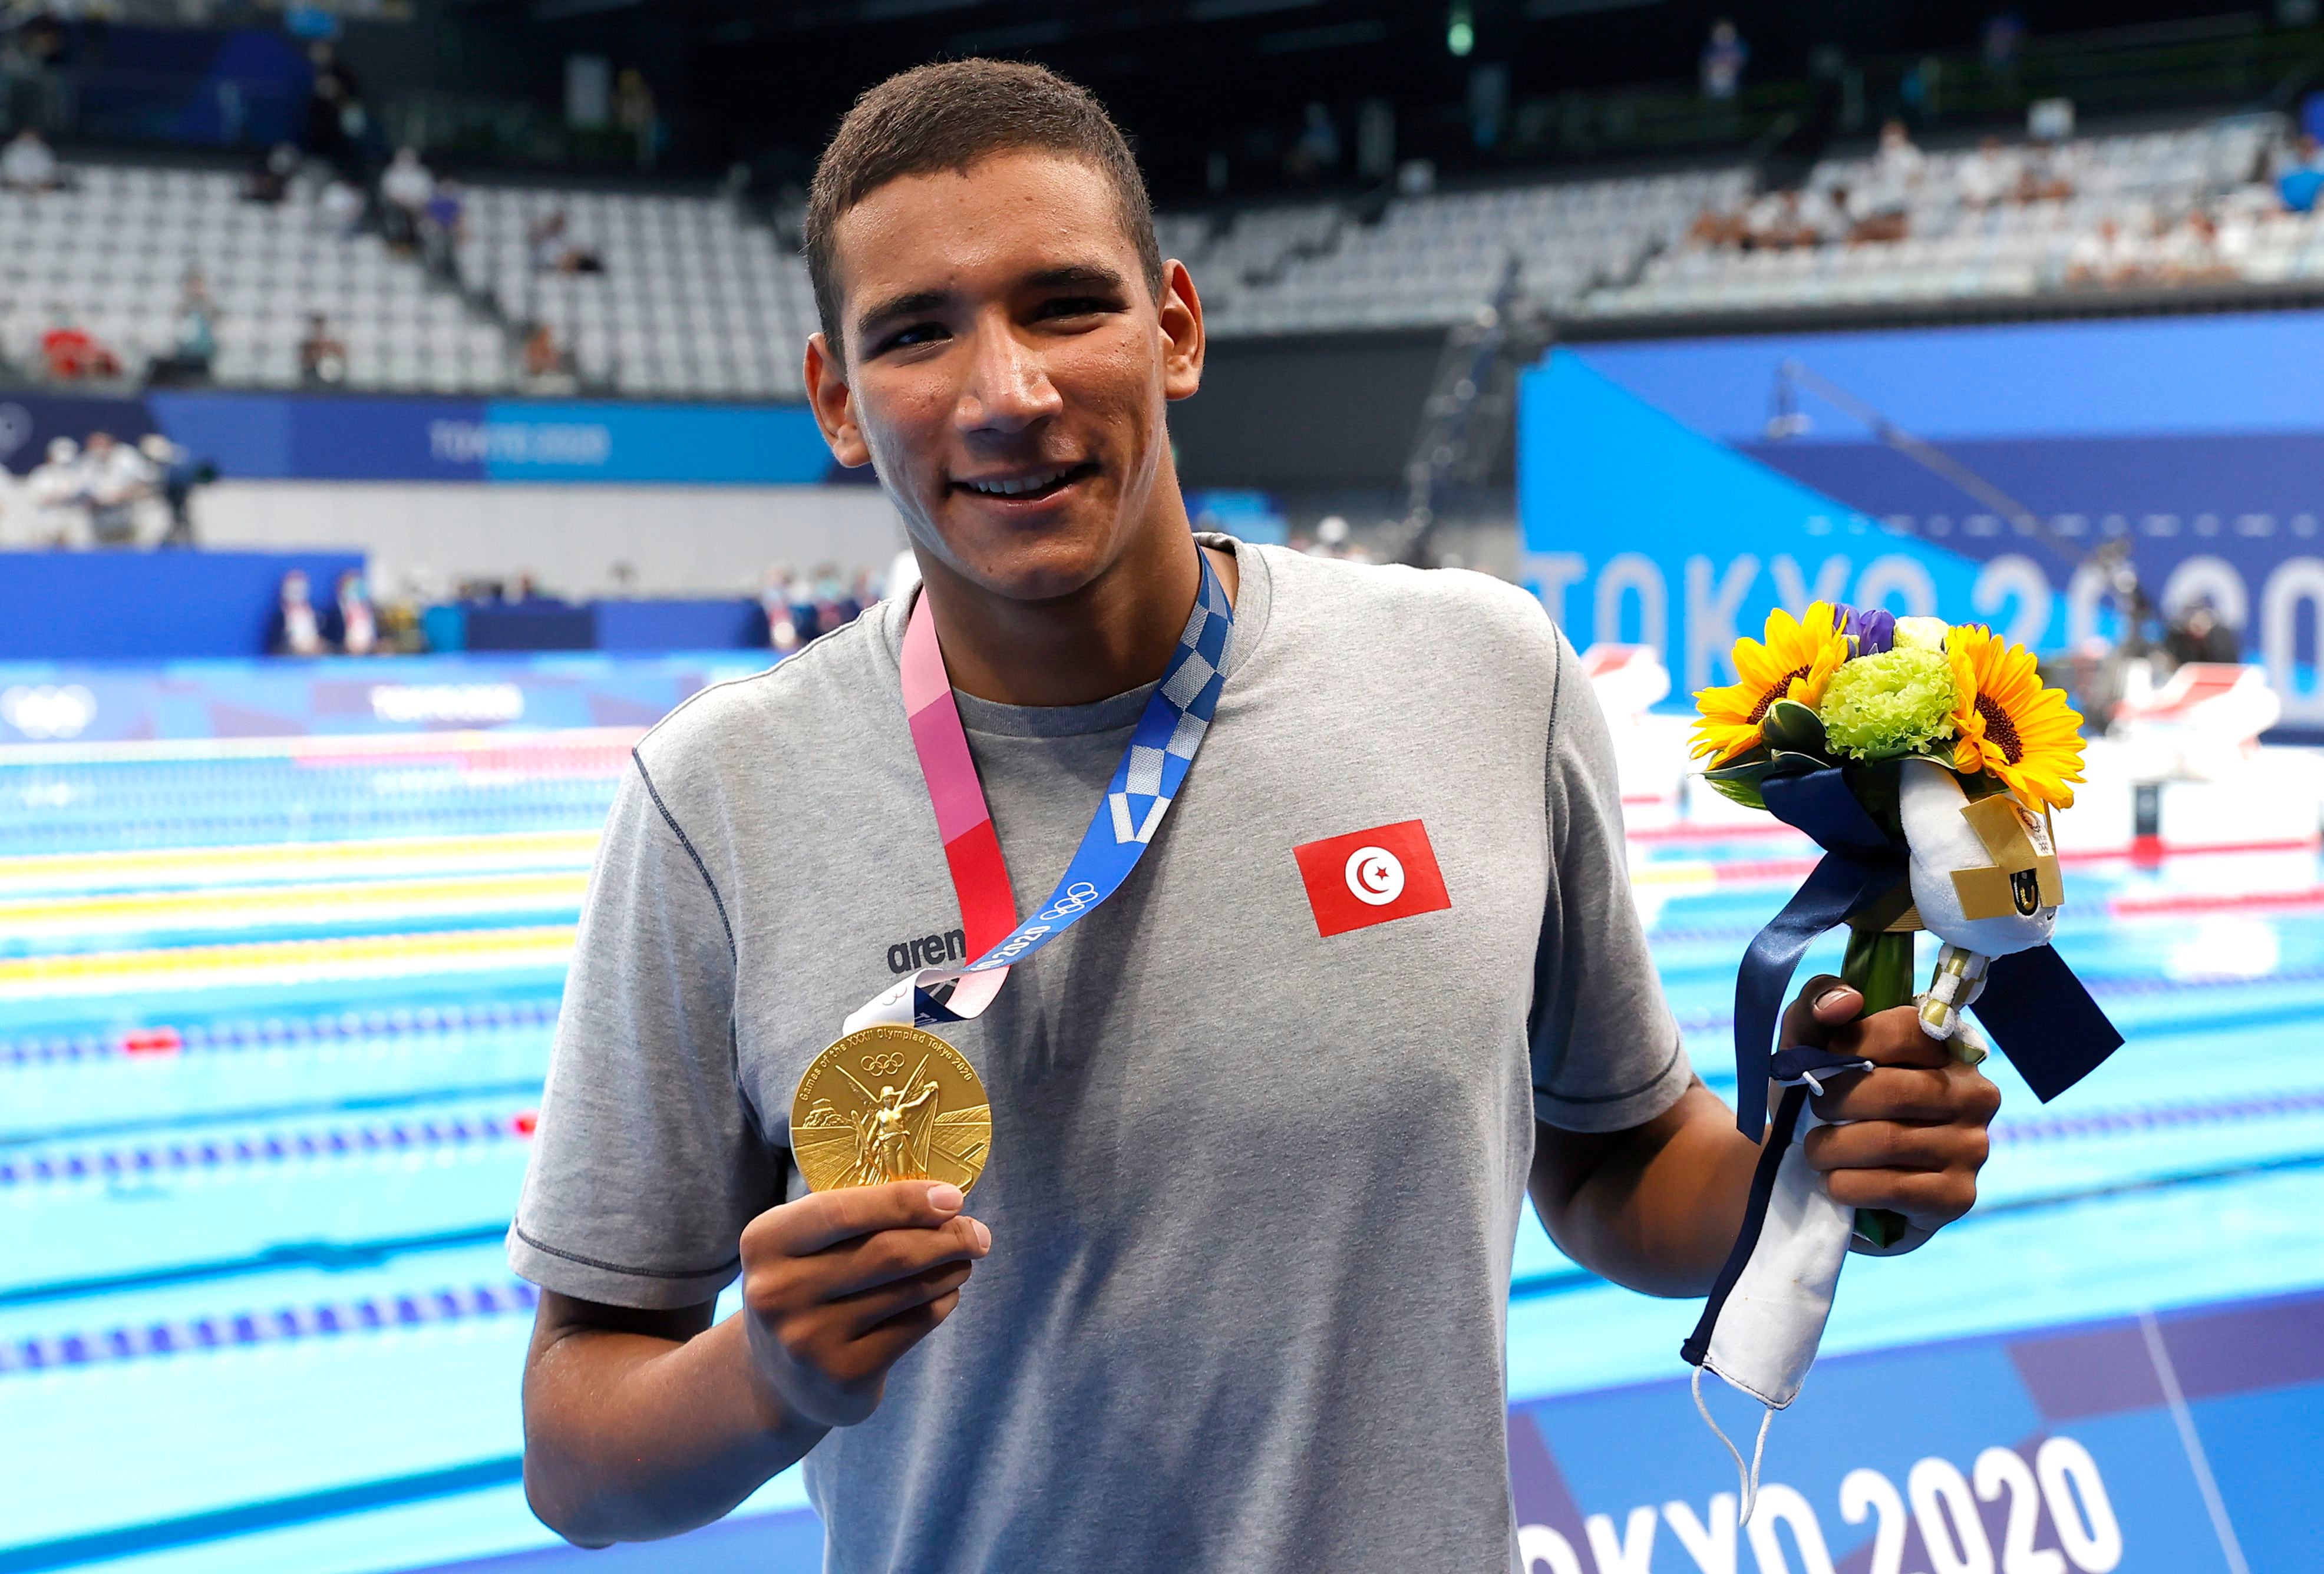 tunisia’s olympic gold medallist ahmed hafnaoui a major doubt for paris 2024